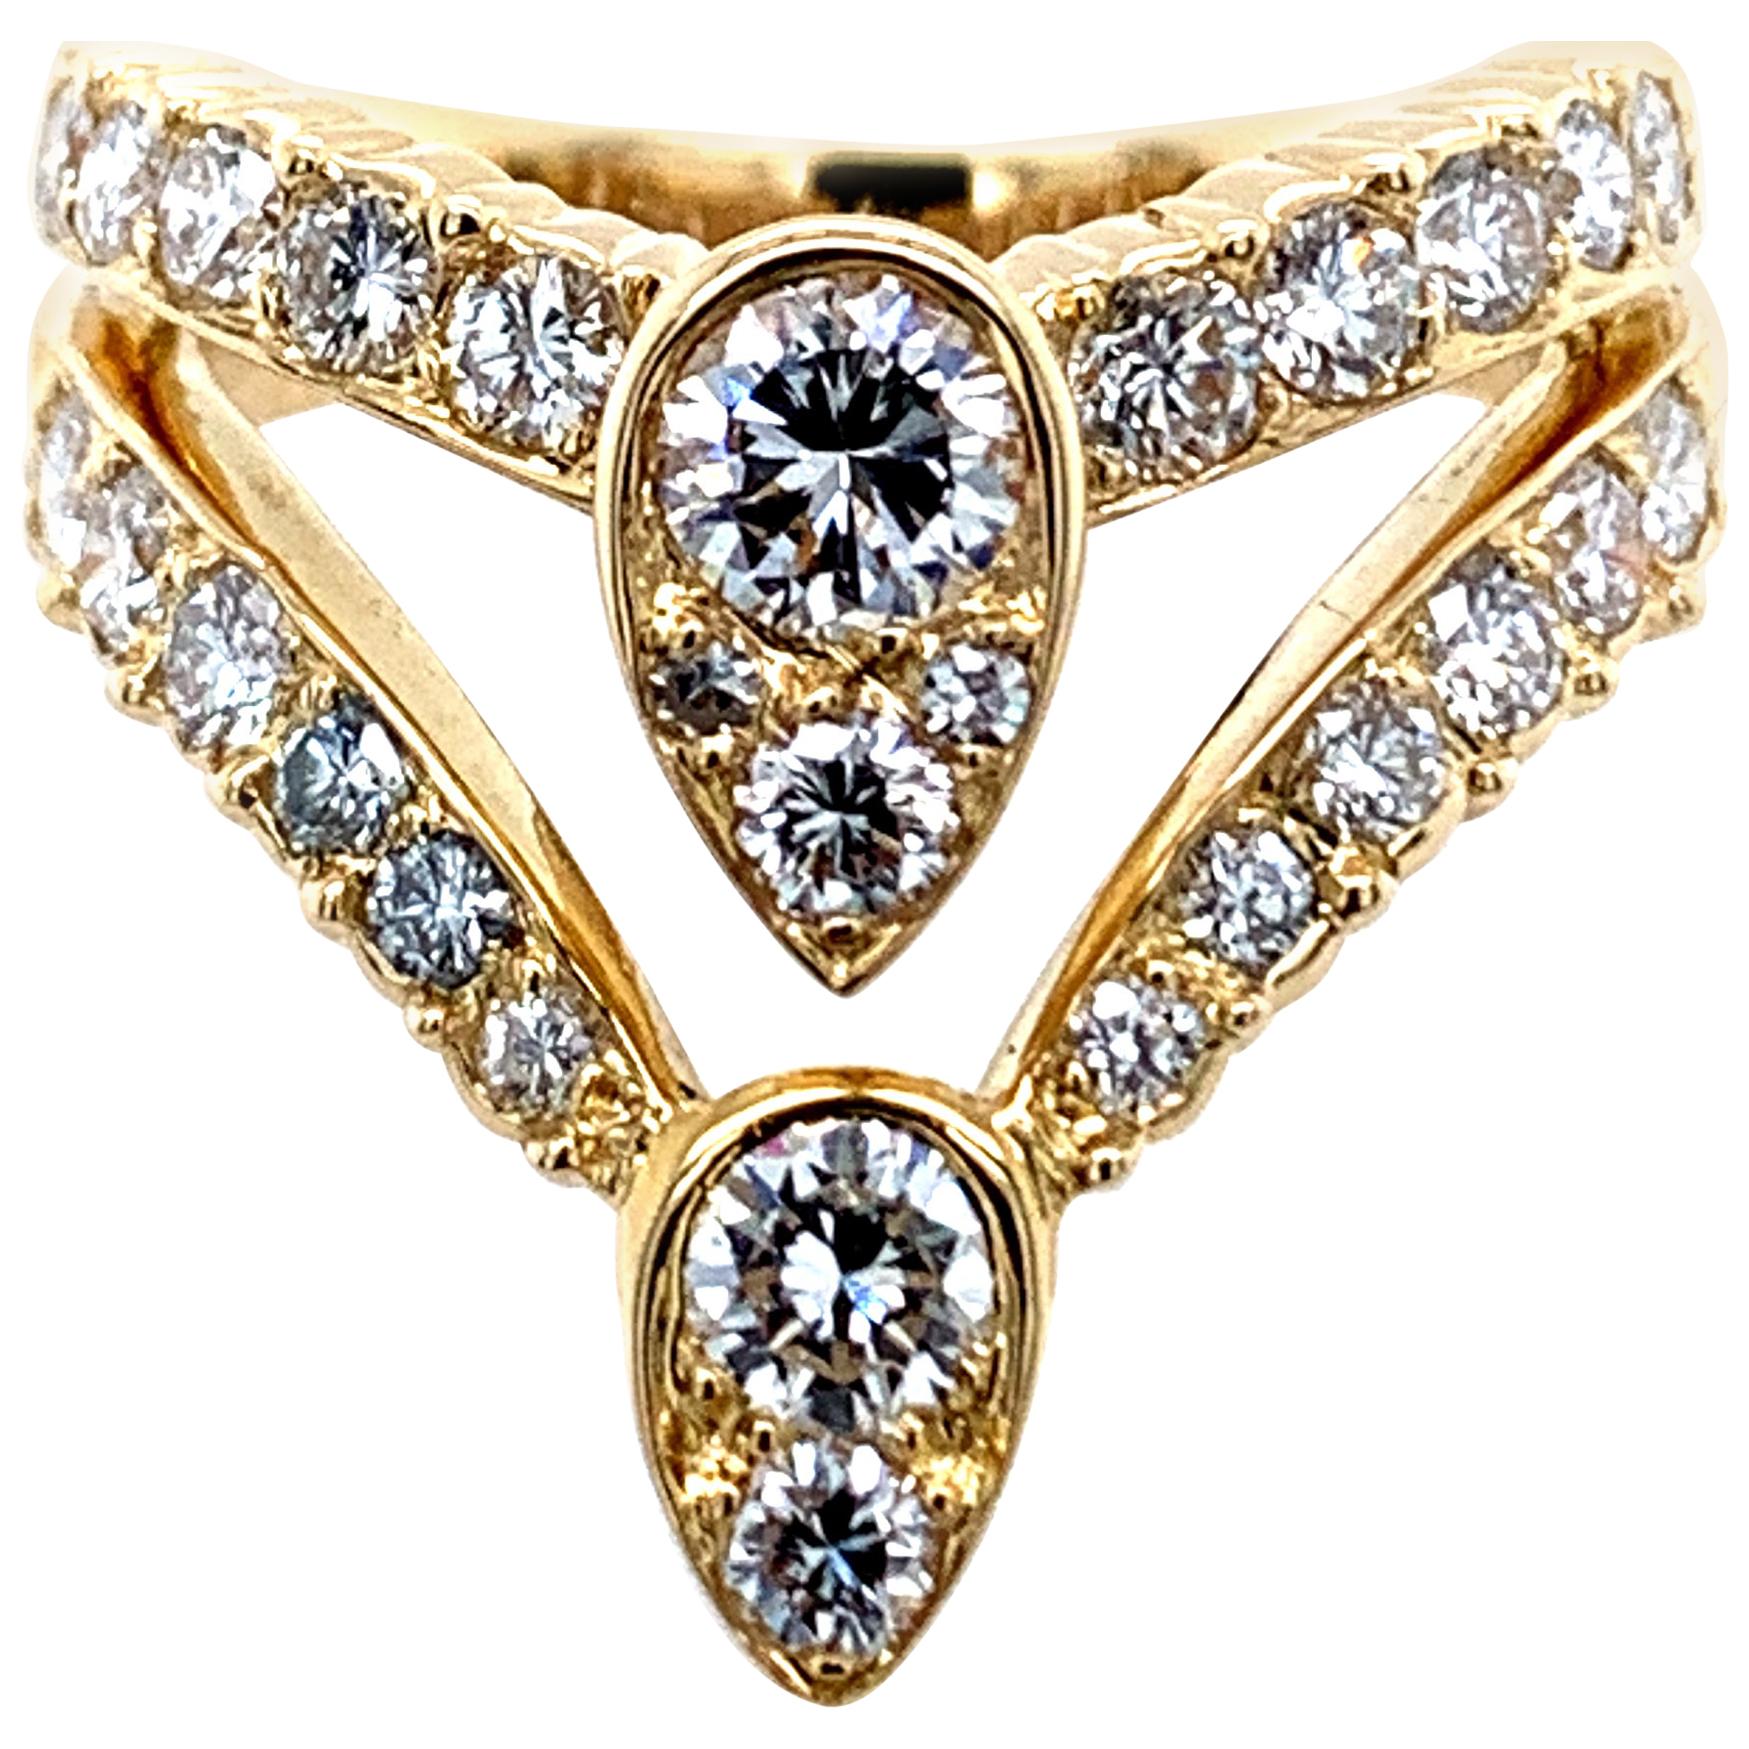 Van Cleef & Arpels Gold and Diamond Teardrop Ring